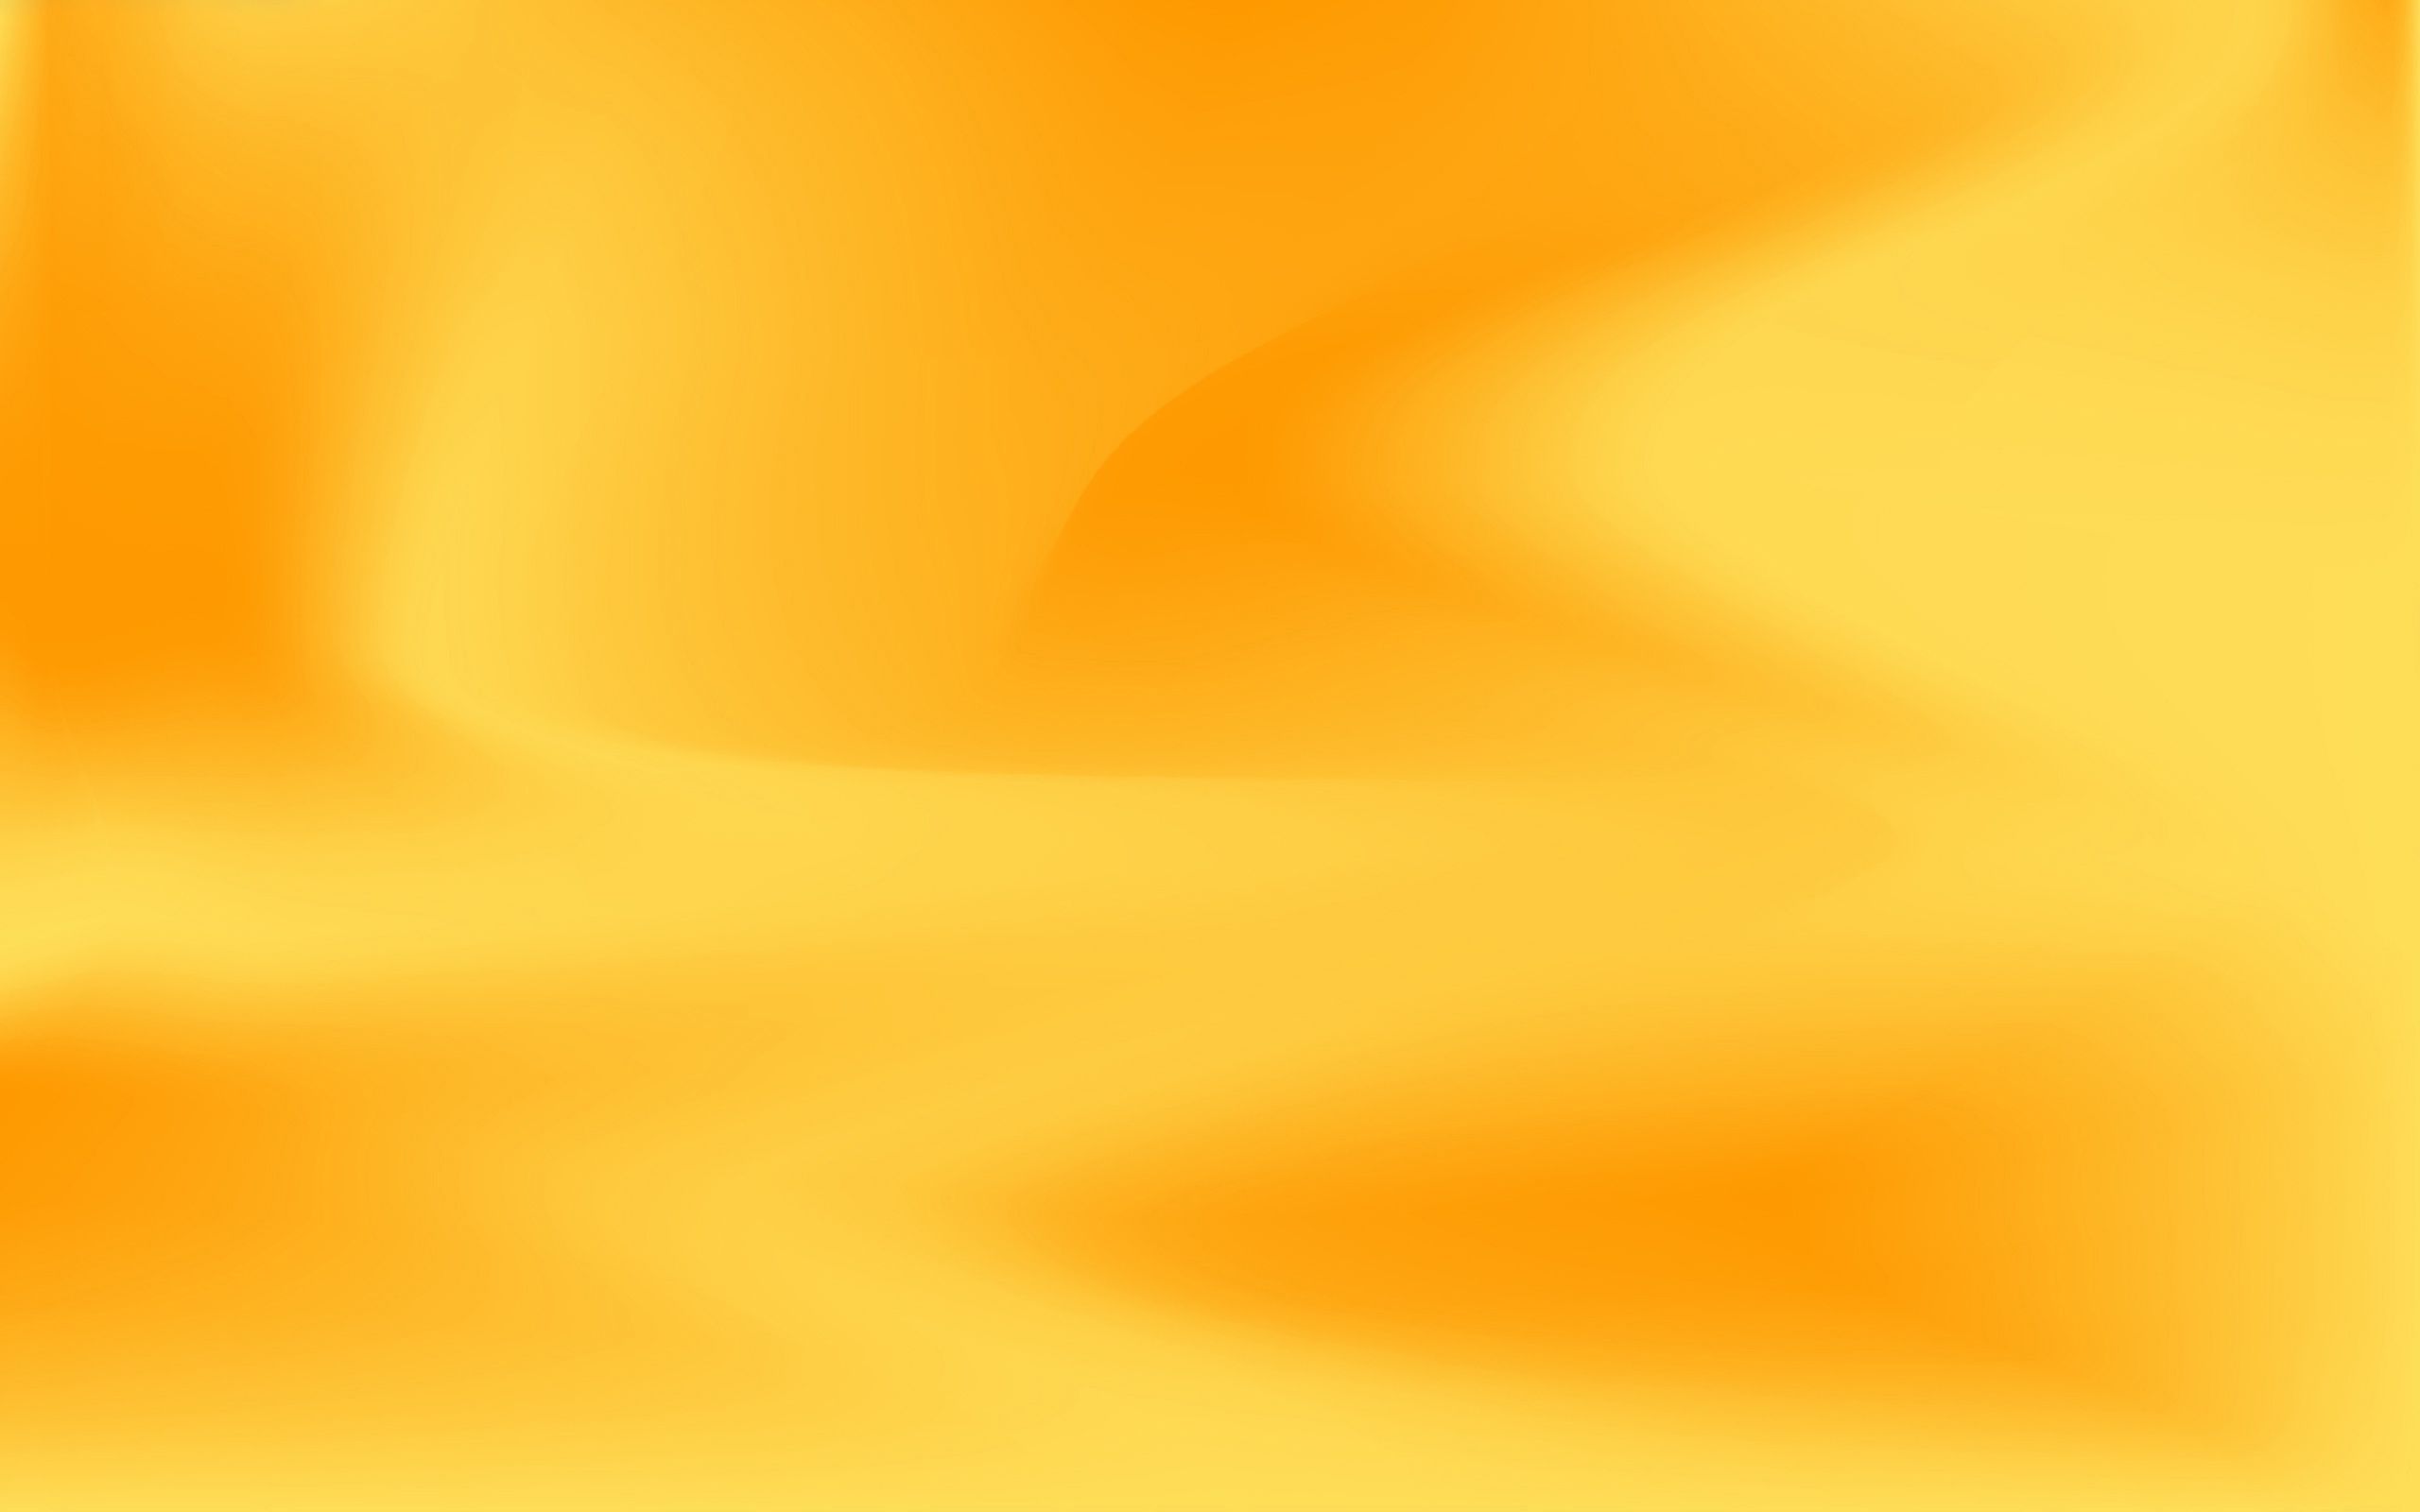 46+] Orange and Yellow Wallpaper - WallpaperSafari